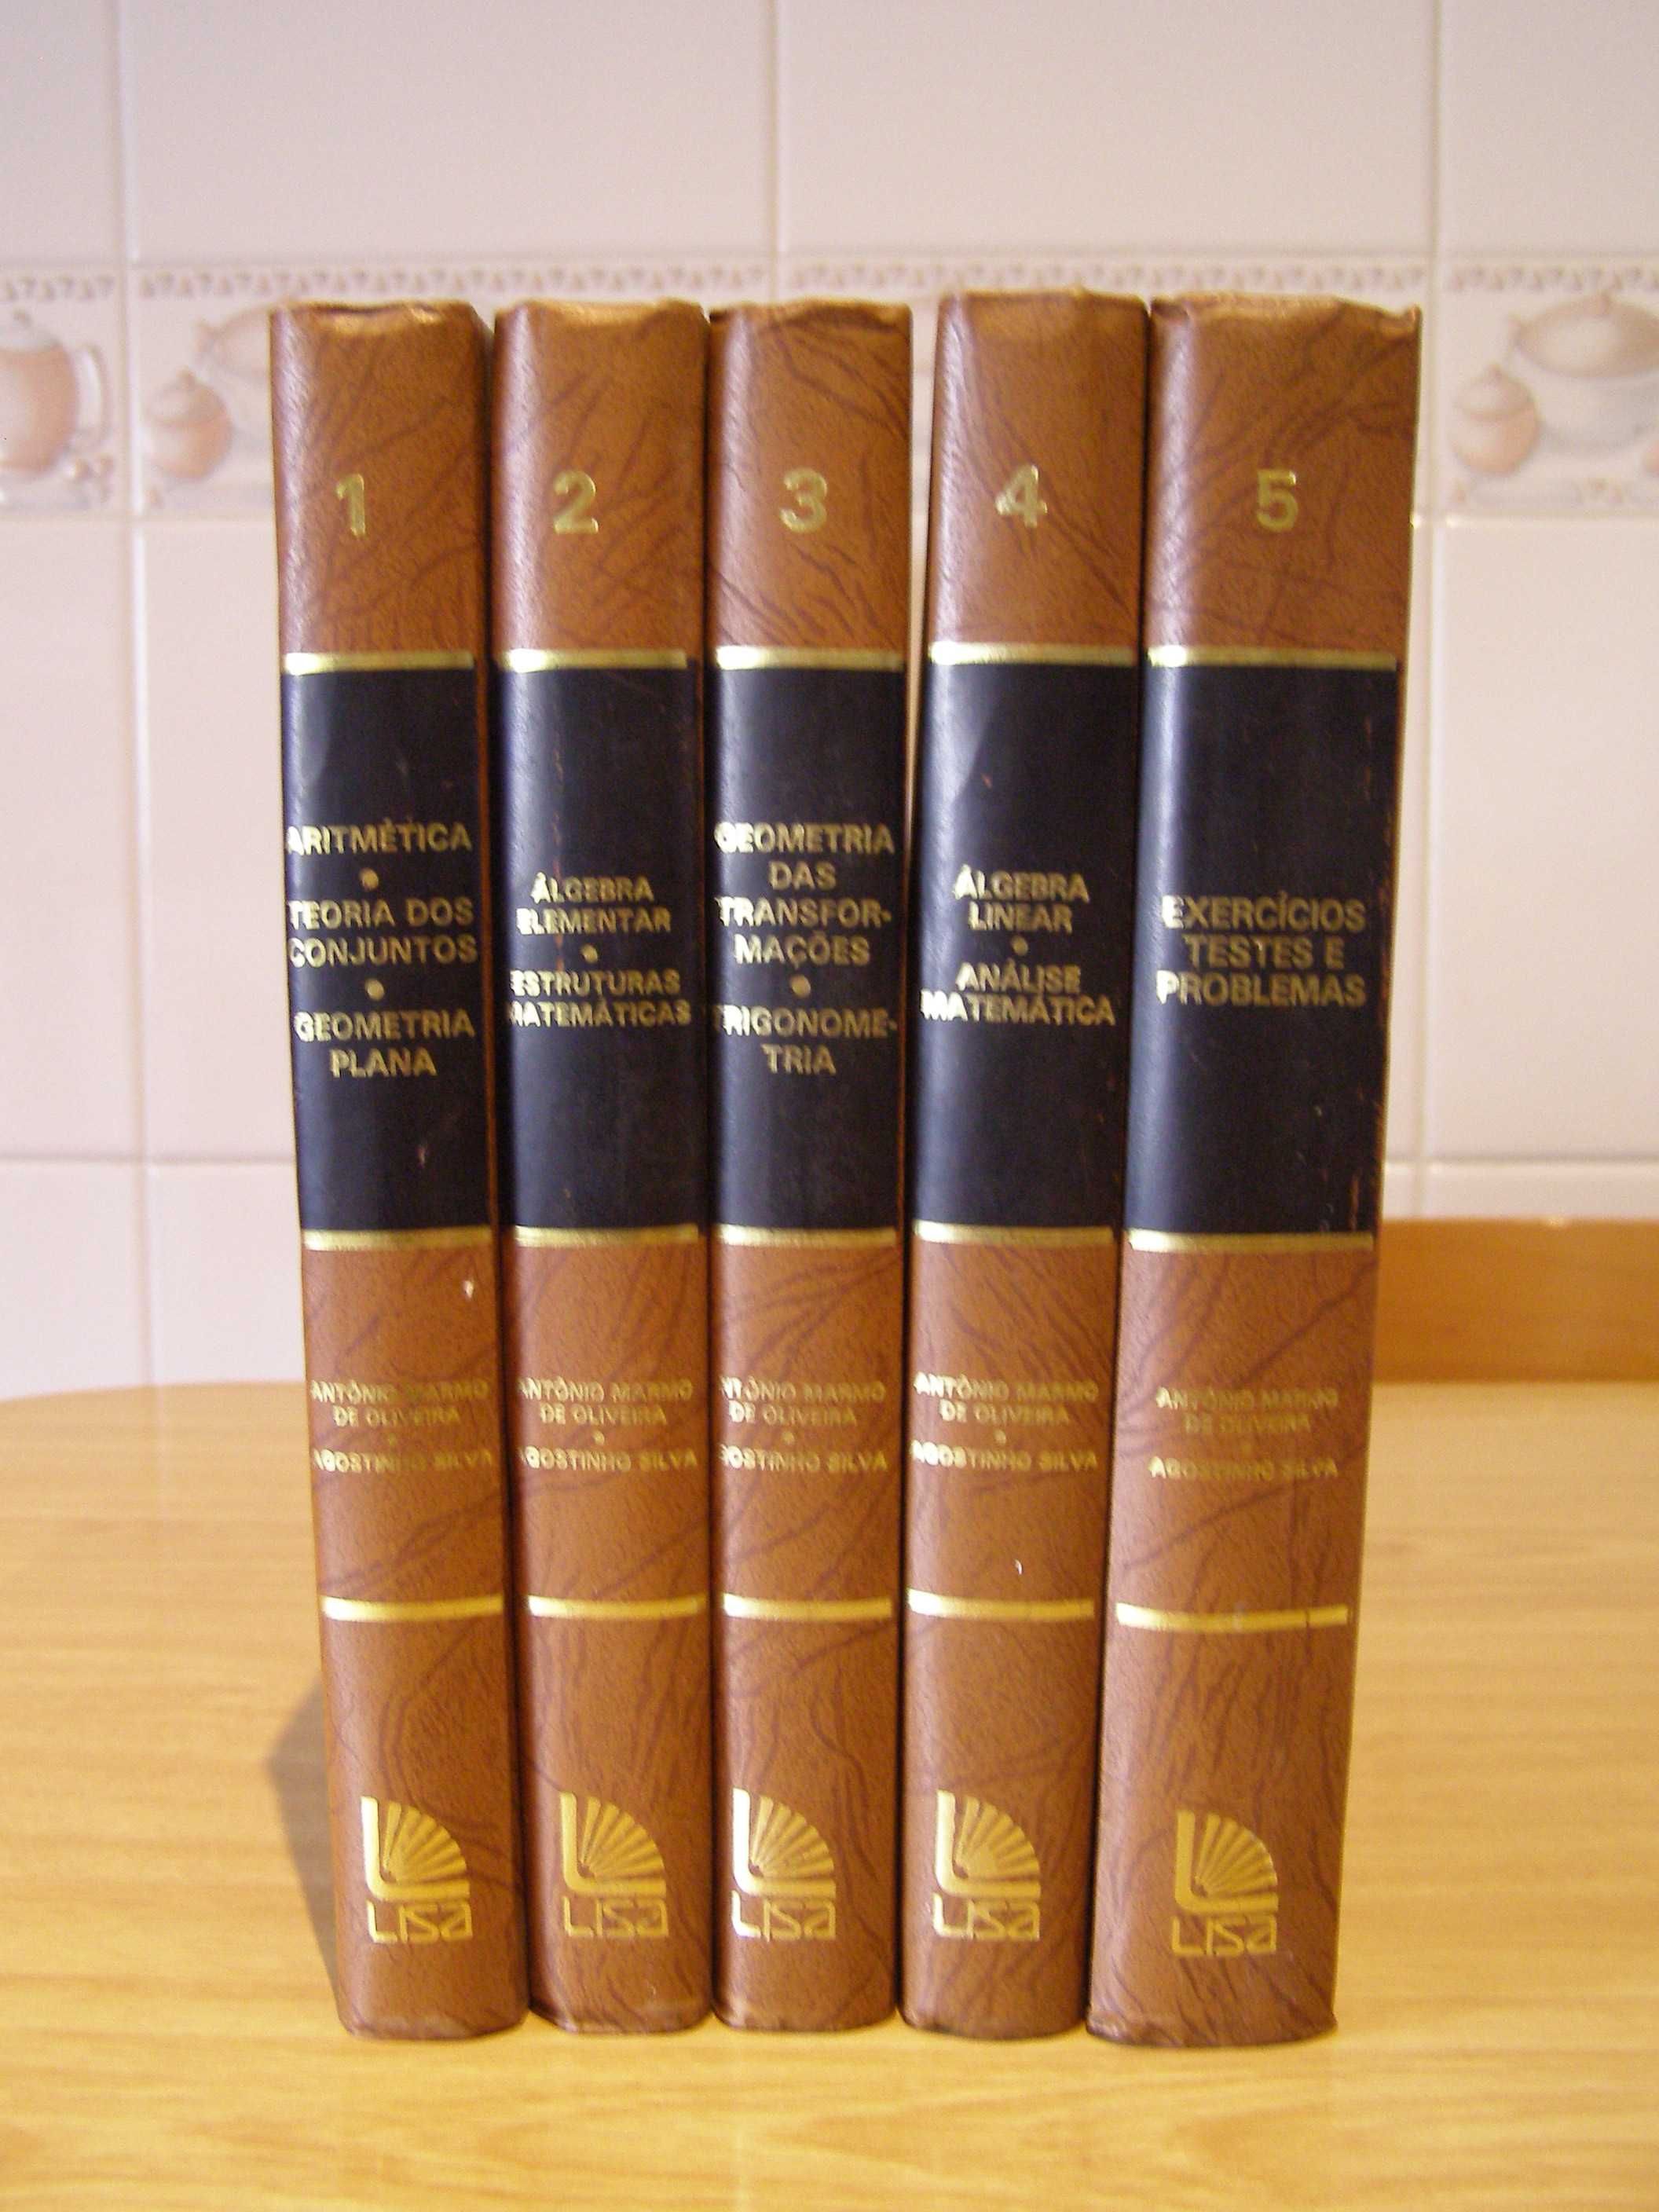 Enciclopédias - várias